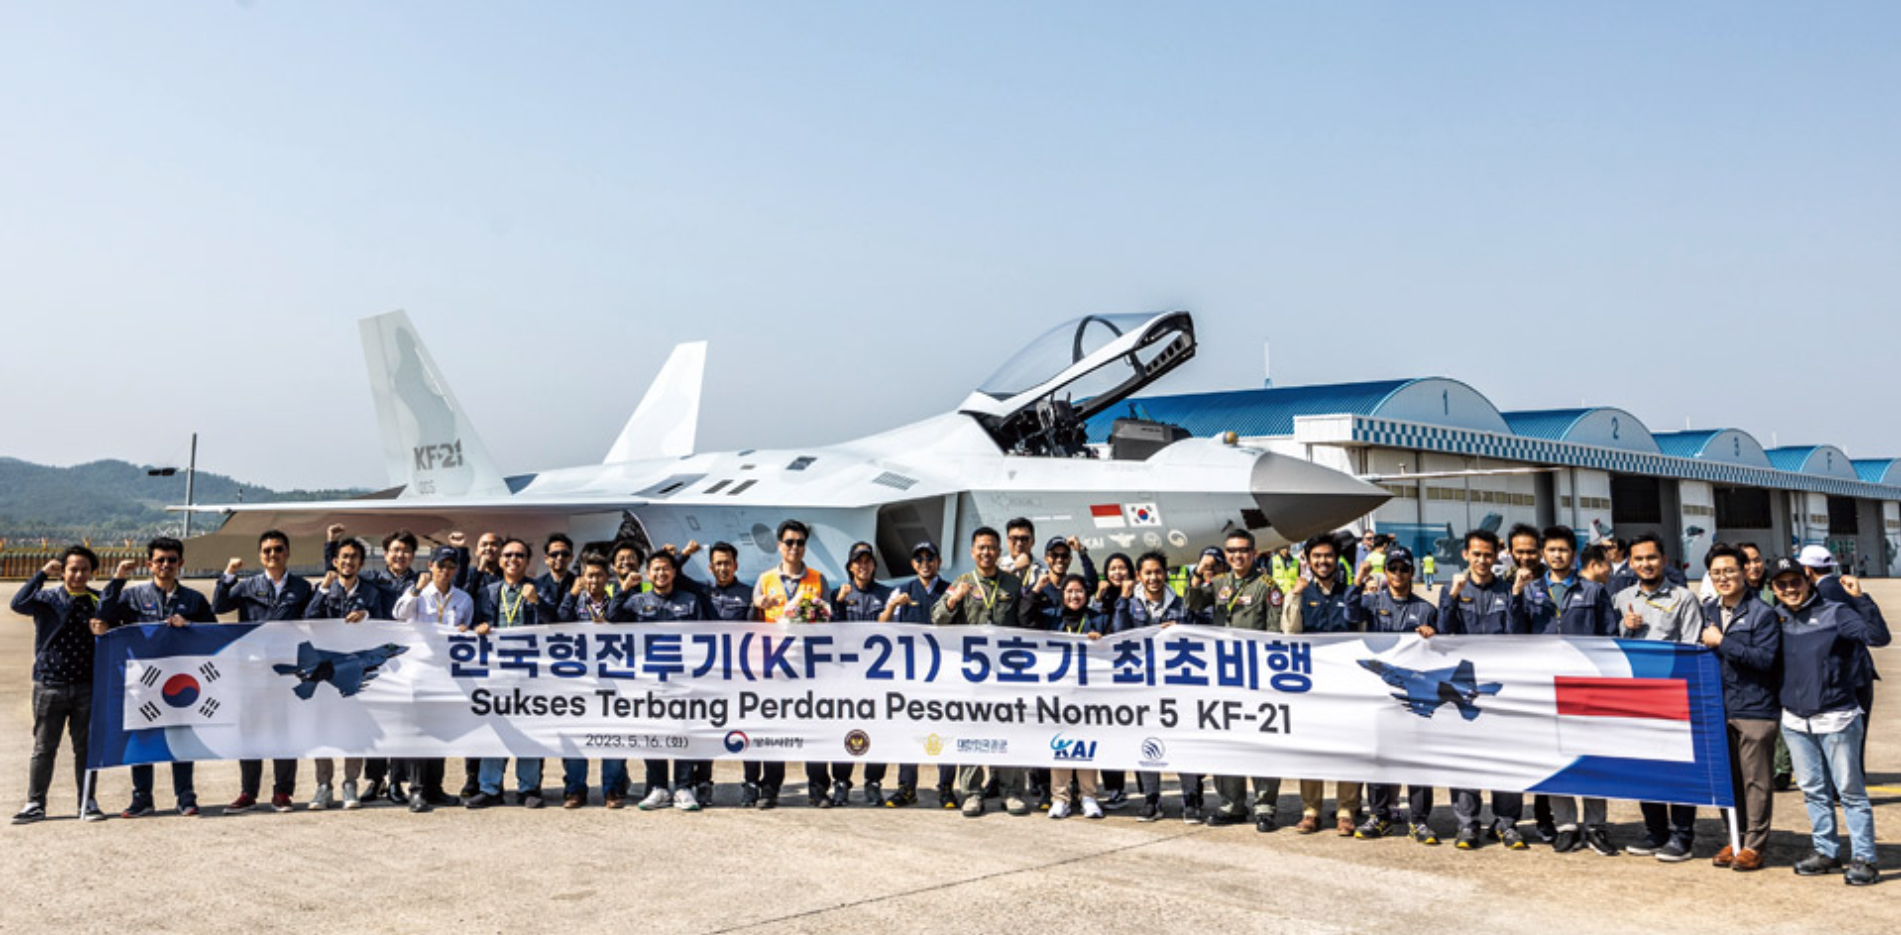 KF-21 5호기 최초비행 기념사진. 시제 5호기는 인도네시아에 인도될 시제기로 인도네시아 기술진, 연구원, 파일럿들이 기념사진 촬영에 많이 참여했다. / 사진 제공=KAI